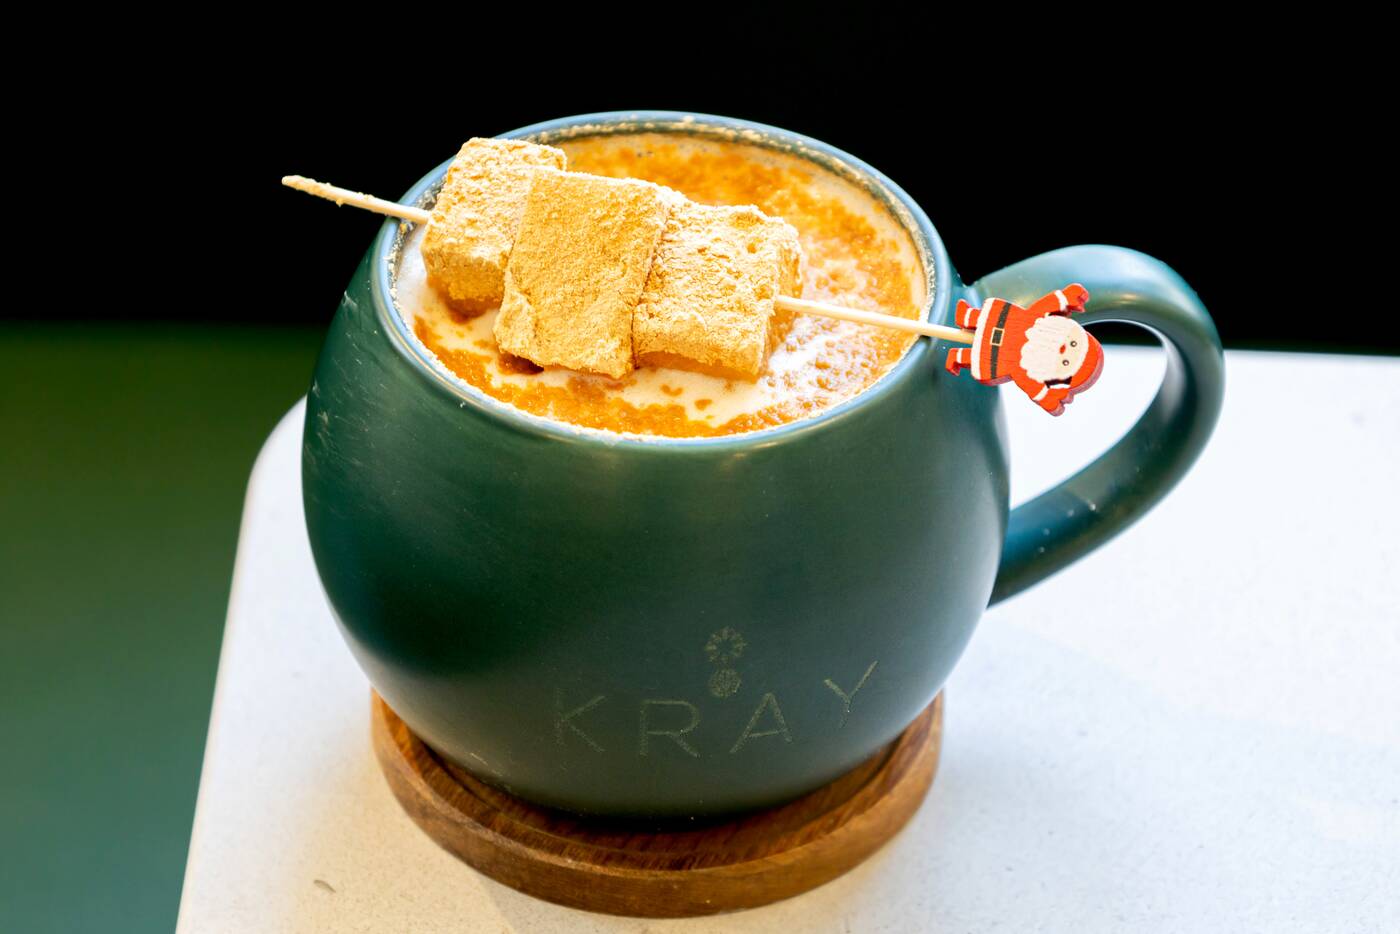 Kray Cafe